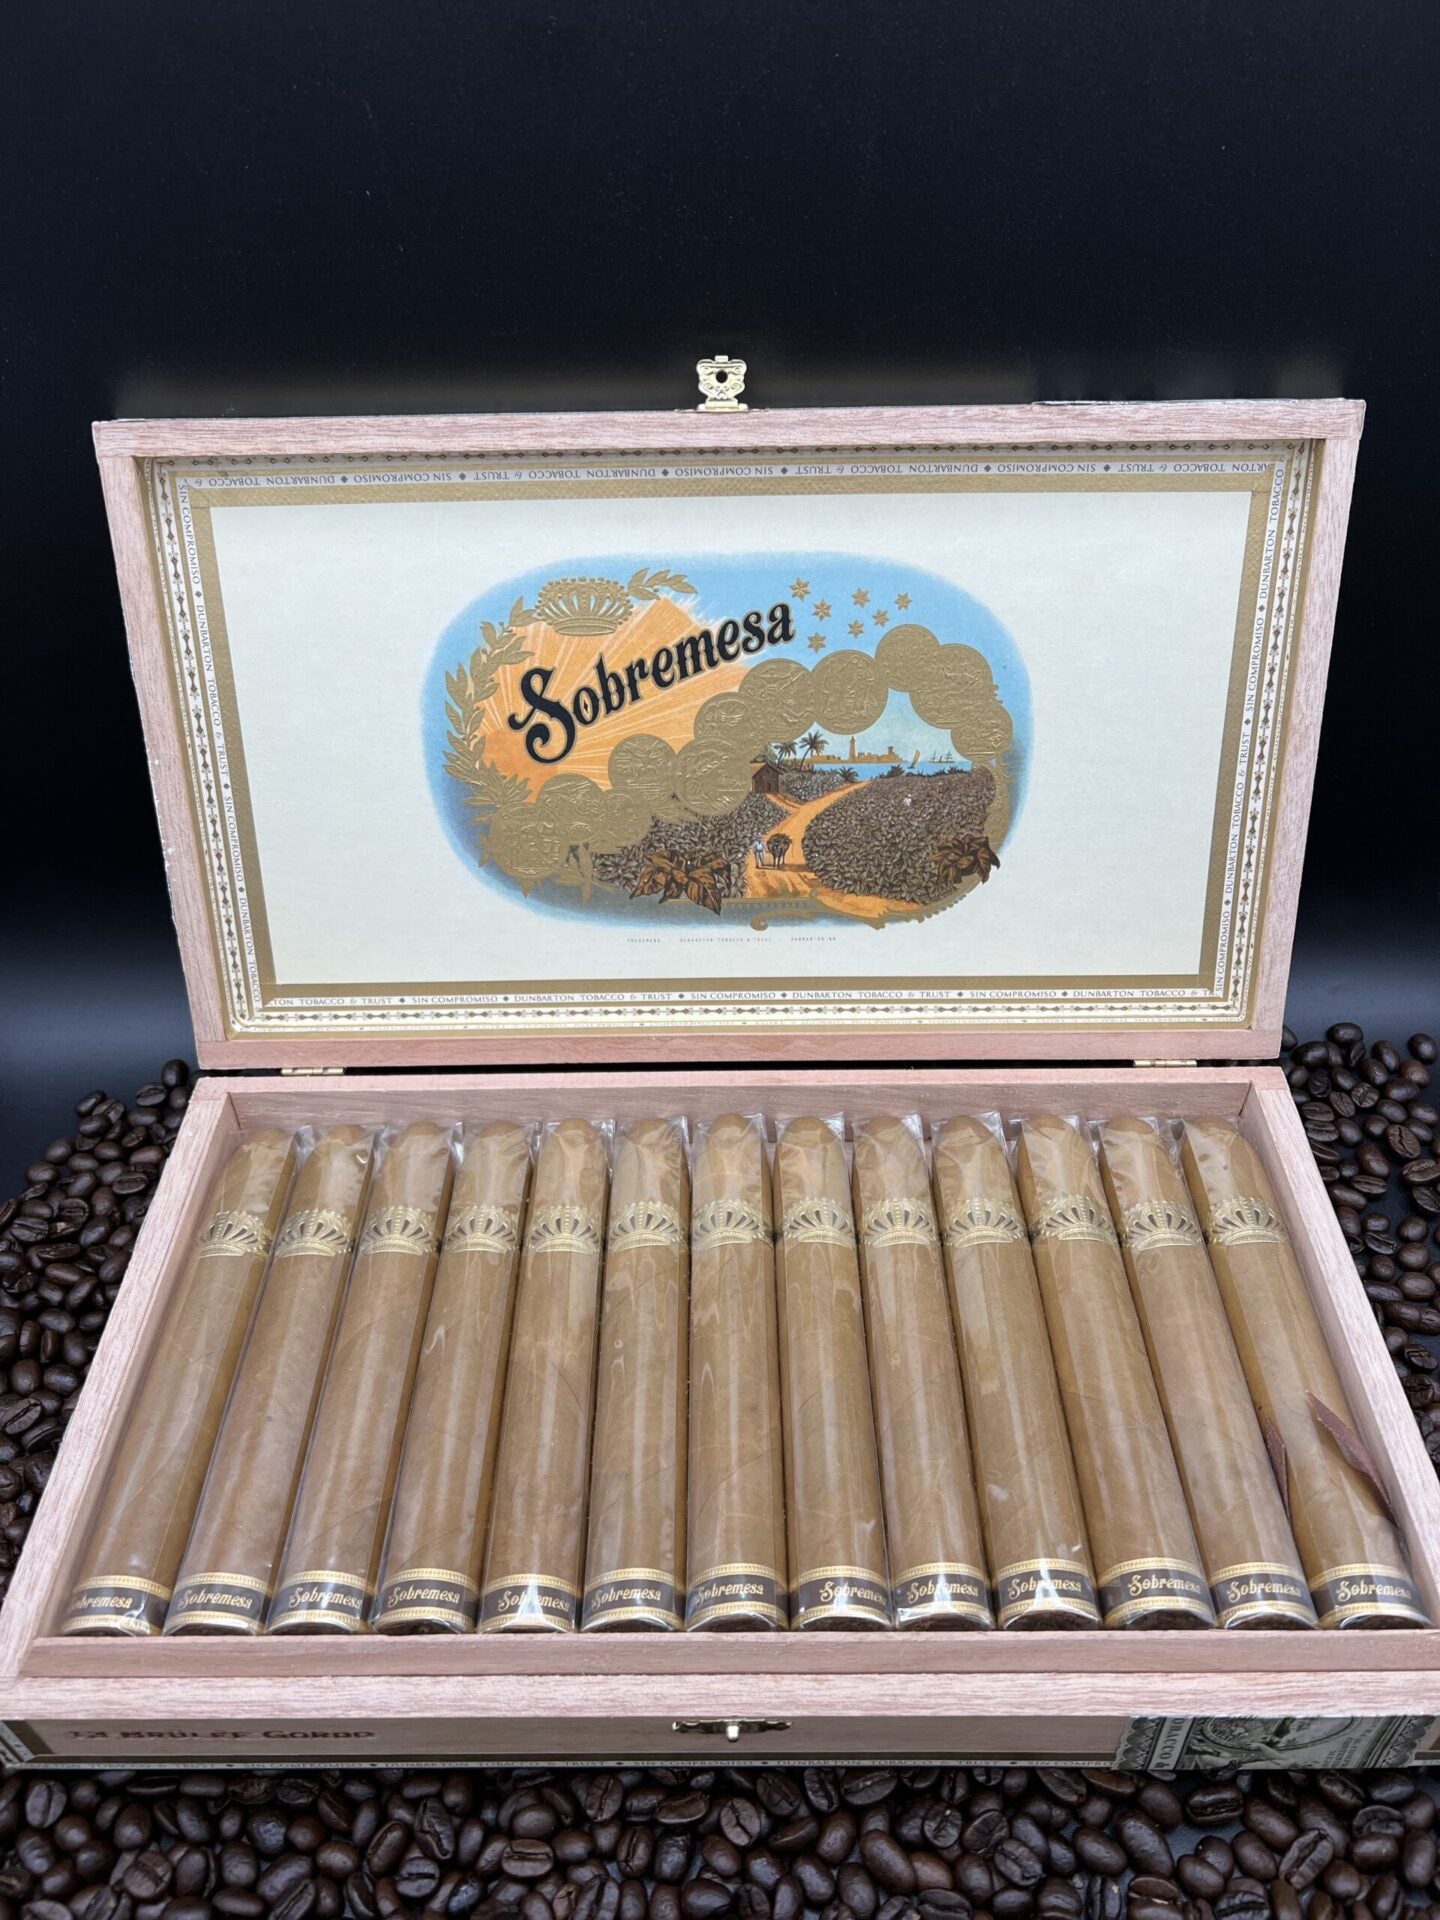 Dunbarton Tobacco & Trust-Sobremesa Brulee Gordo cigars supplied by Sir Louis Cigars